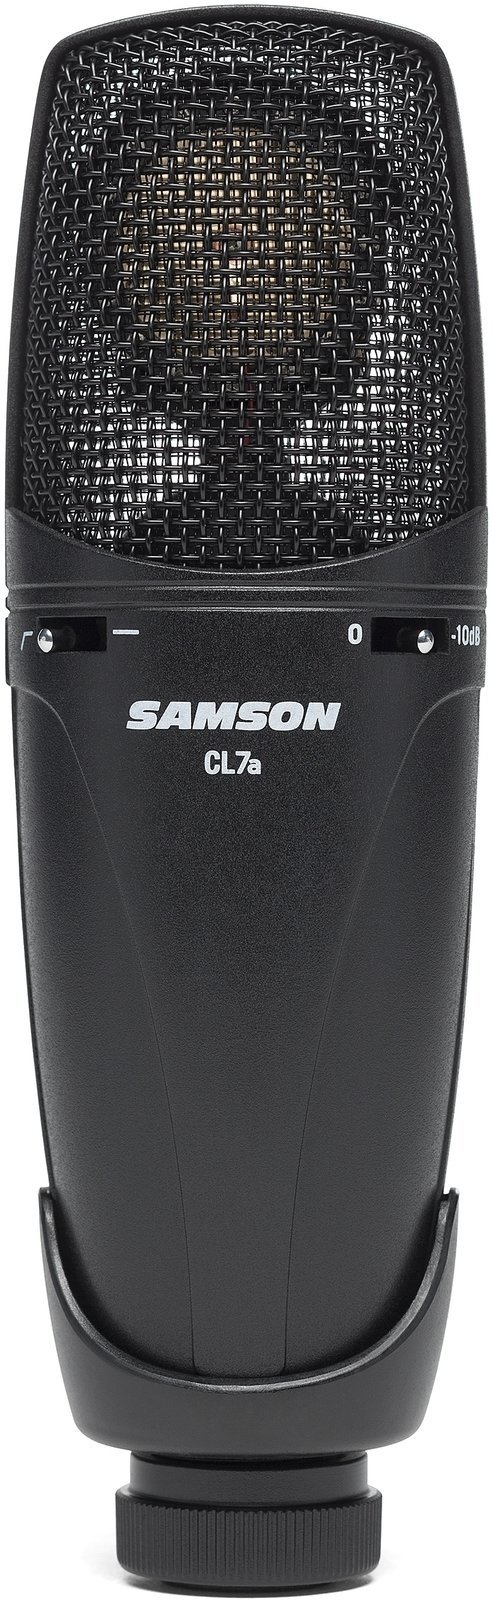 Microfon cu condensator pentru studio Samson CL7a Microfon cu condensator pentru studio